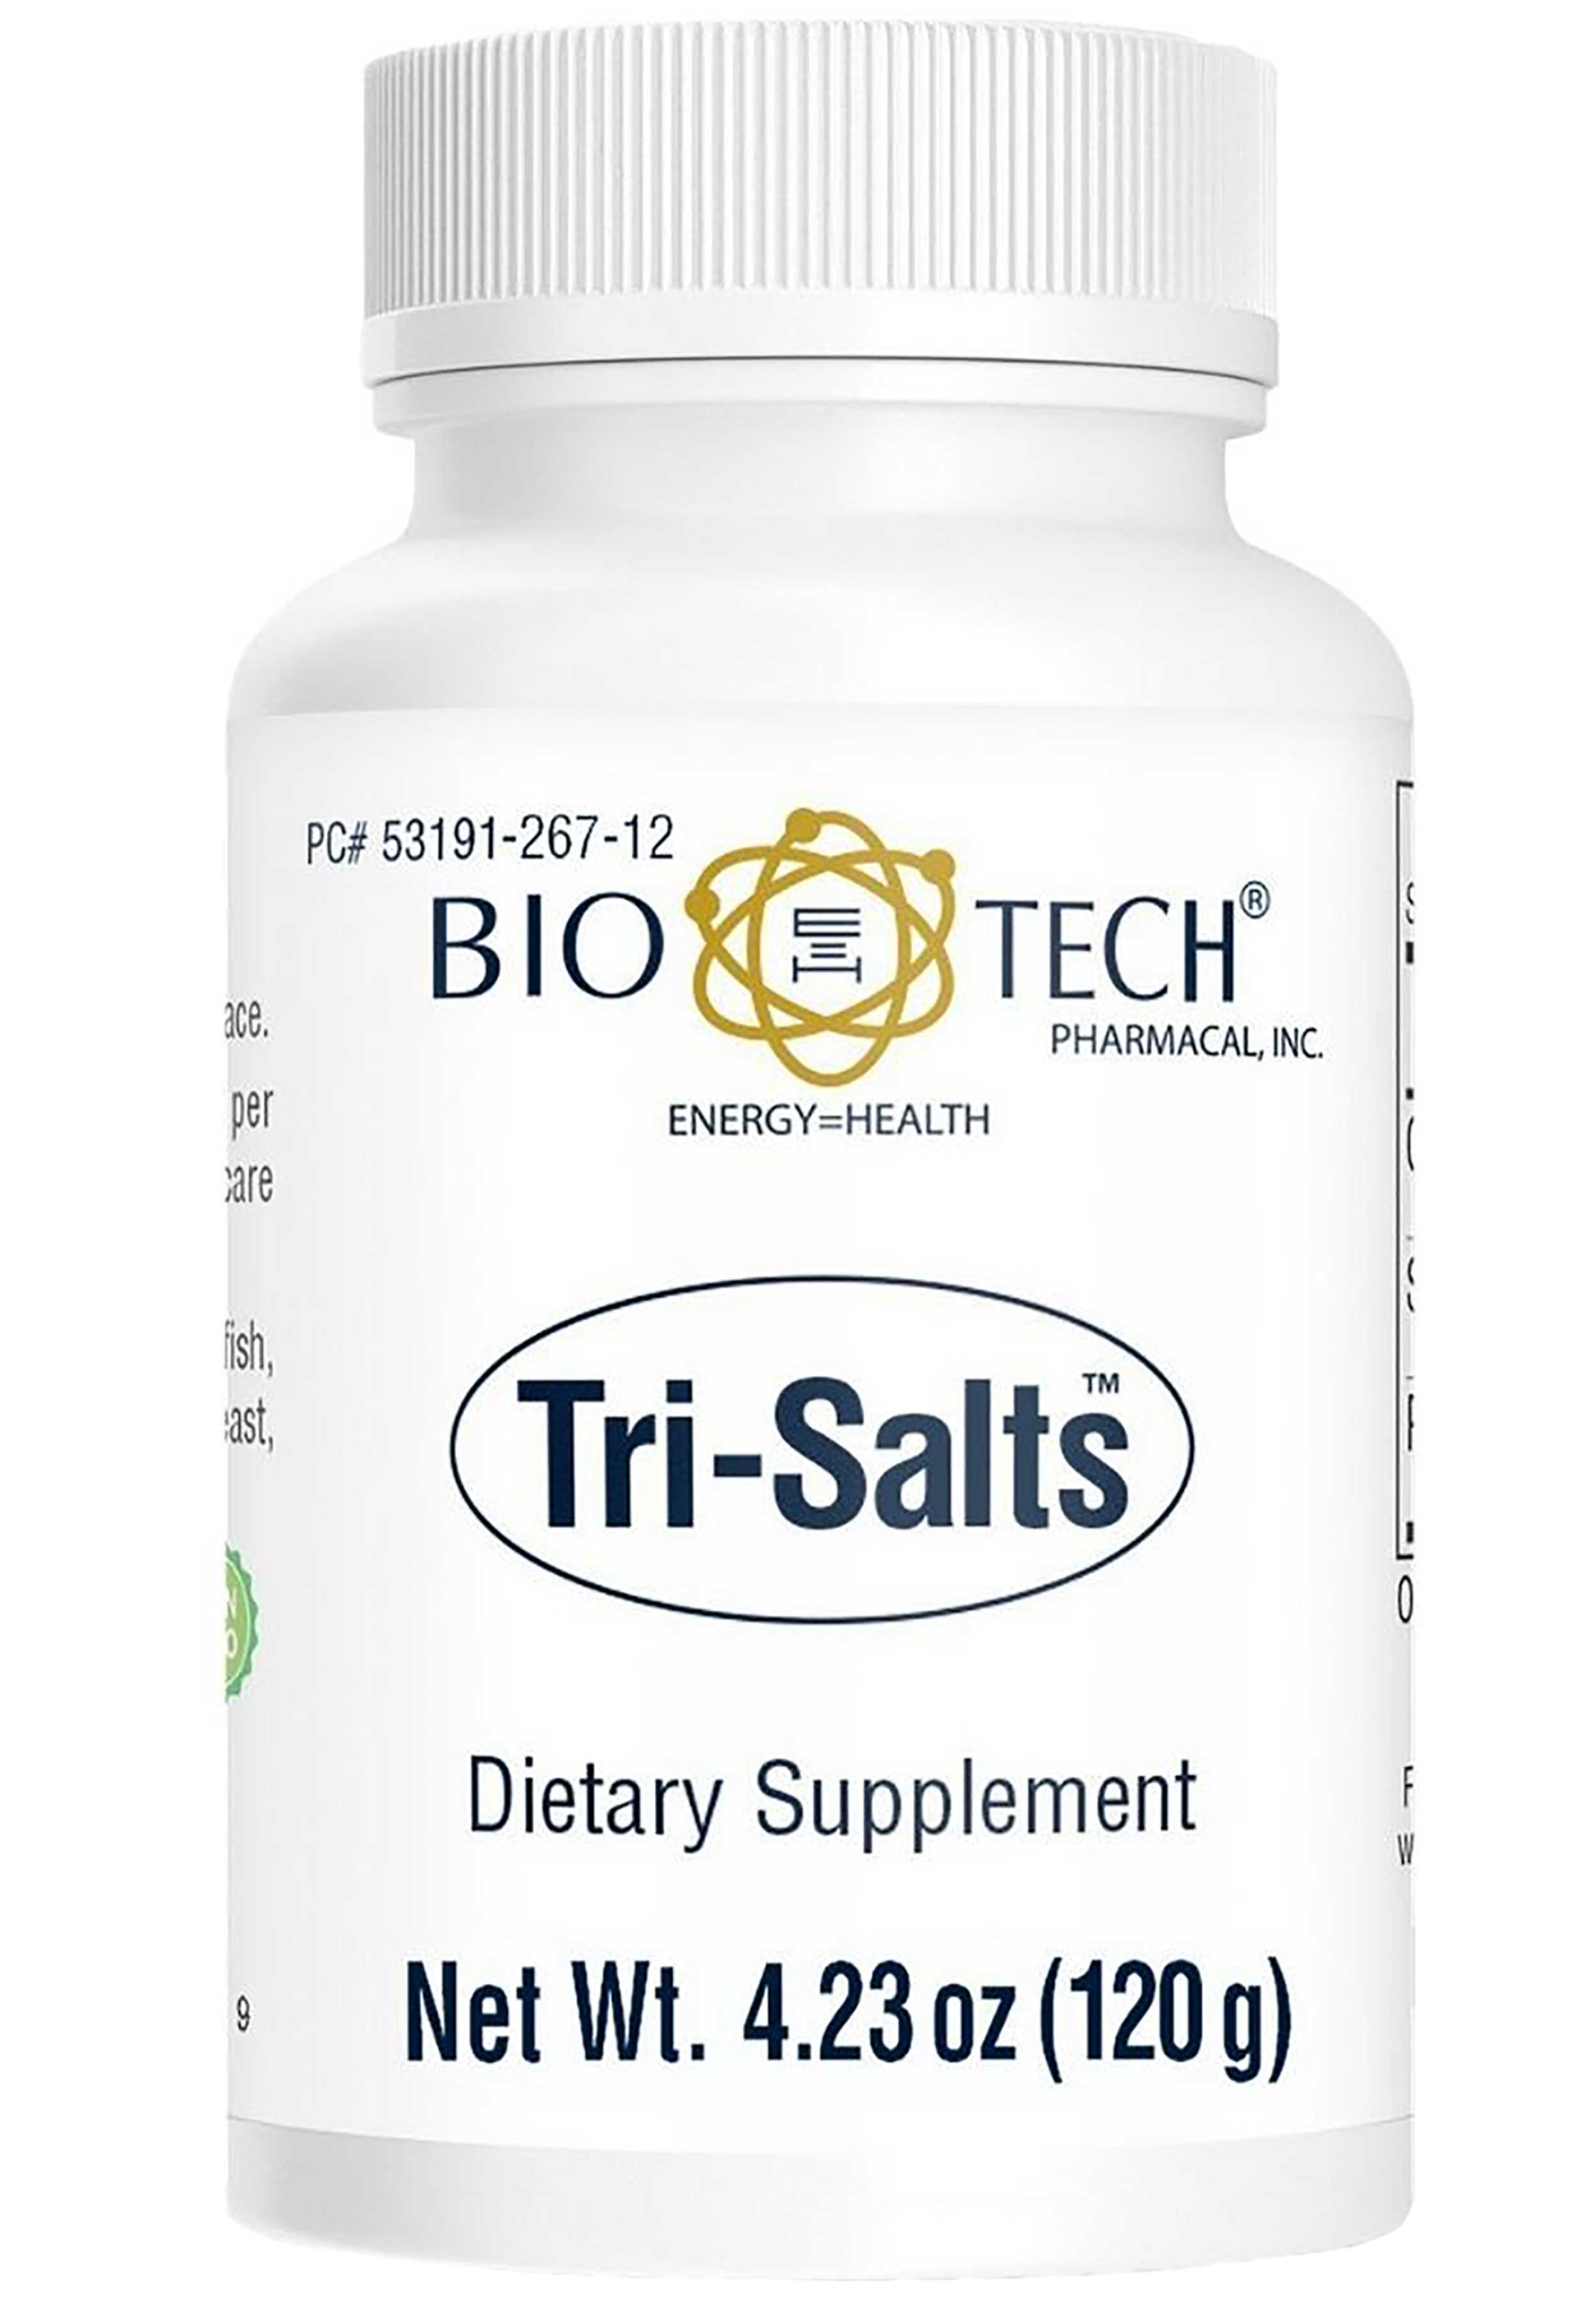 Bio-Tech Pharmacal Tri-Salts Powder